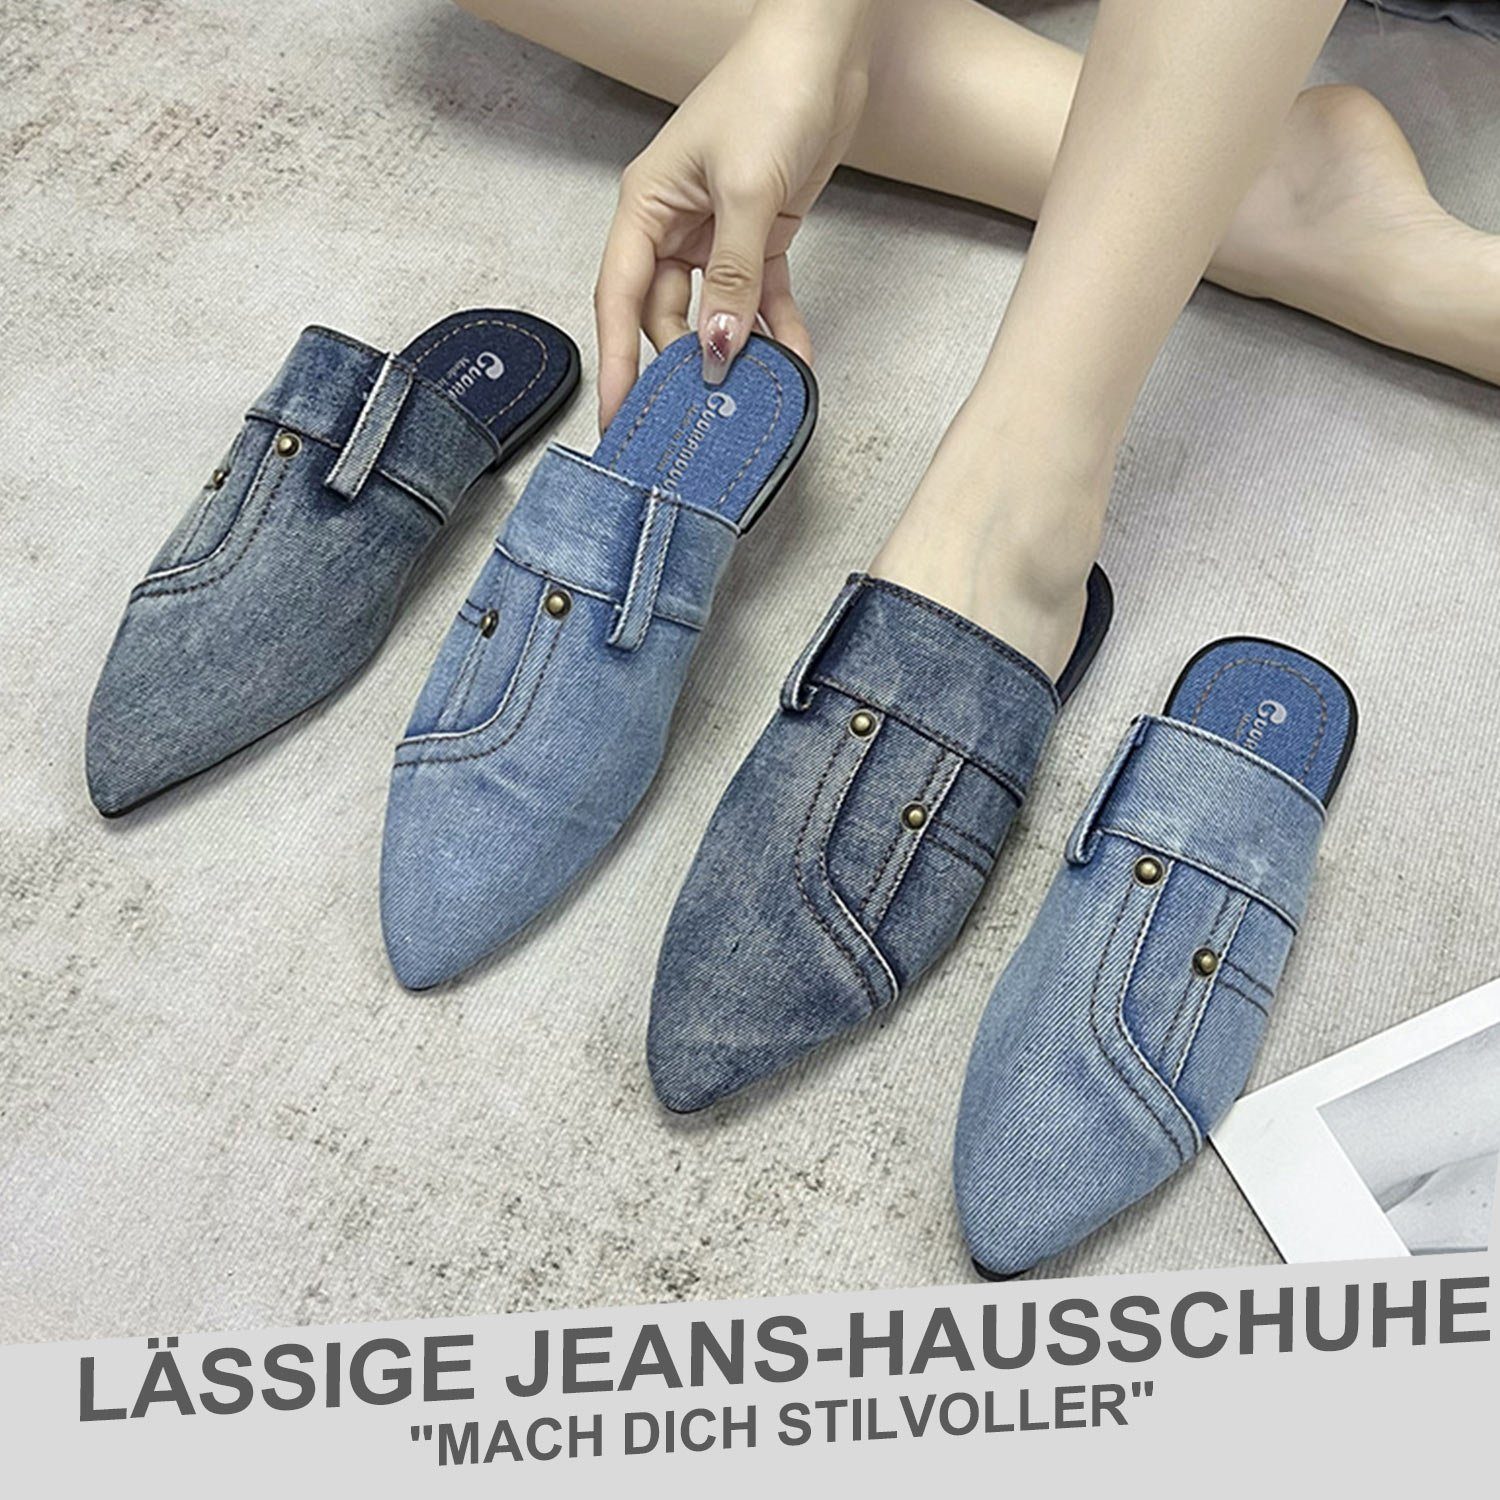 Daisred Damen Denim Spitz Hausschuhe Sandalen Pantoffel Flats Blau Mode